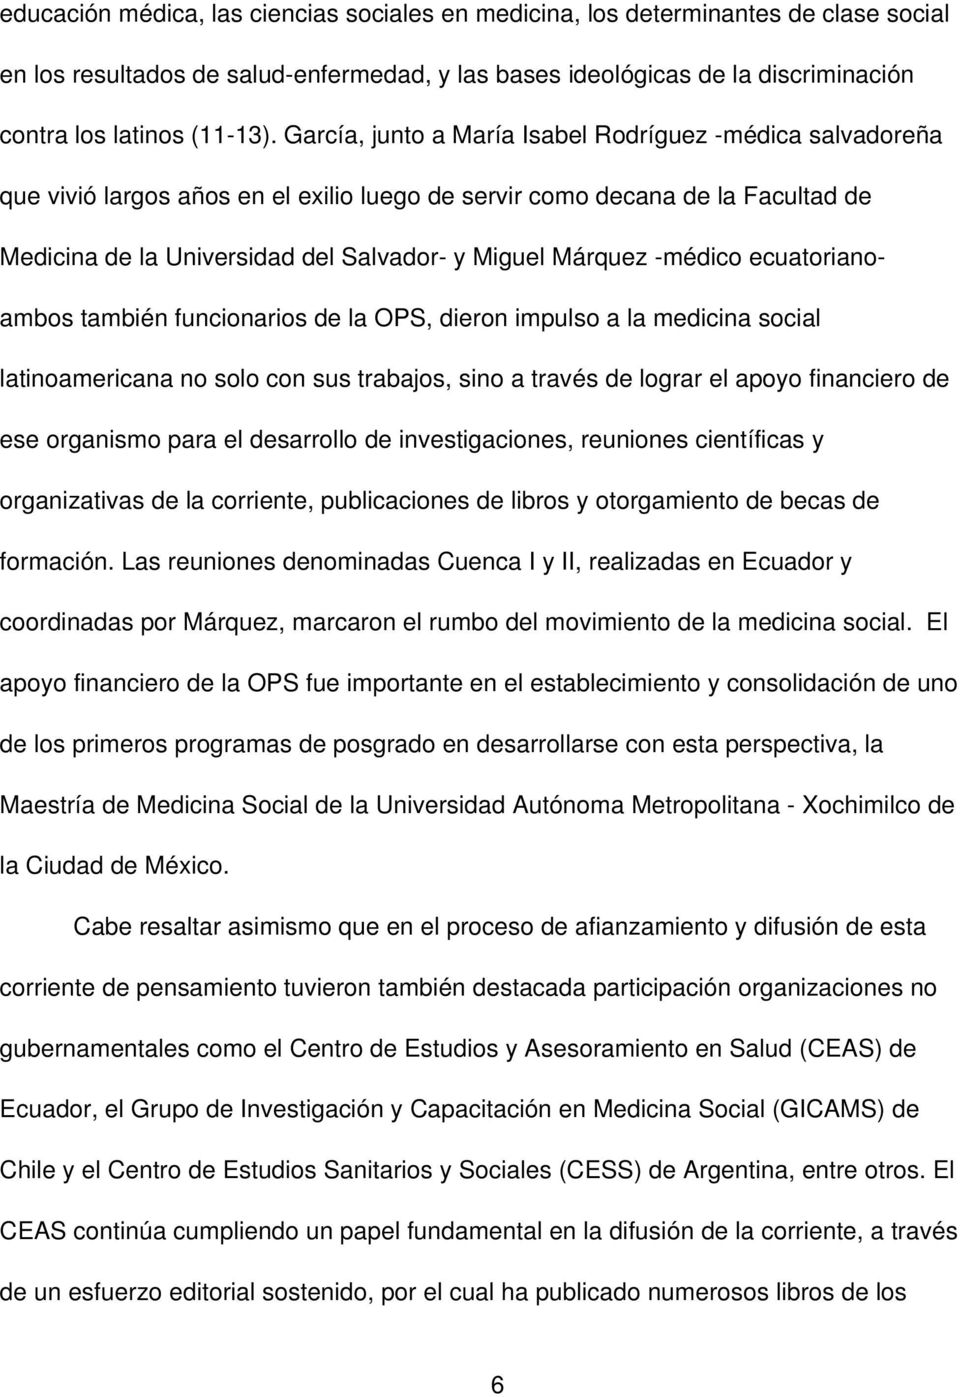 médico ecuatorianoambos también funcionarios de la OPS, dieron impulso a la medicina social latinoamericana no solo con sus trabajos, sino a través de lograr el apoyo financiero de ese organismo para